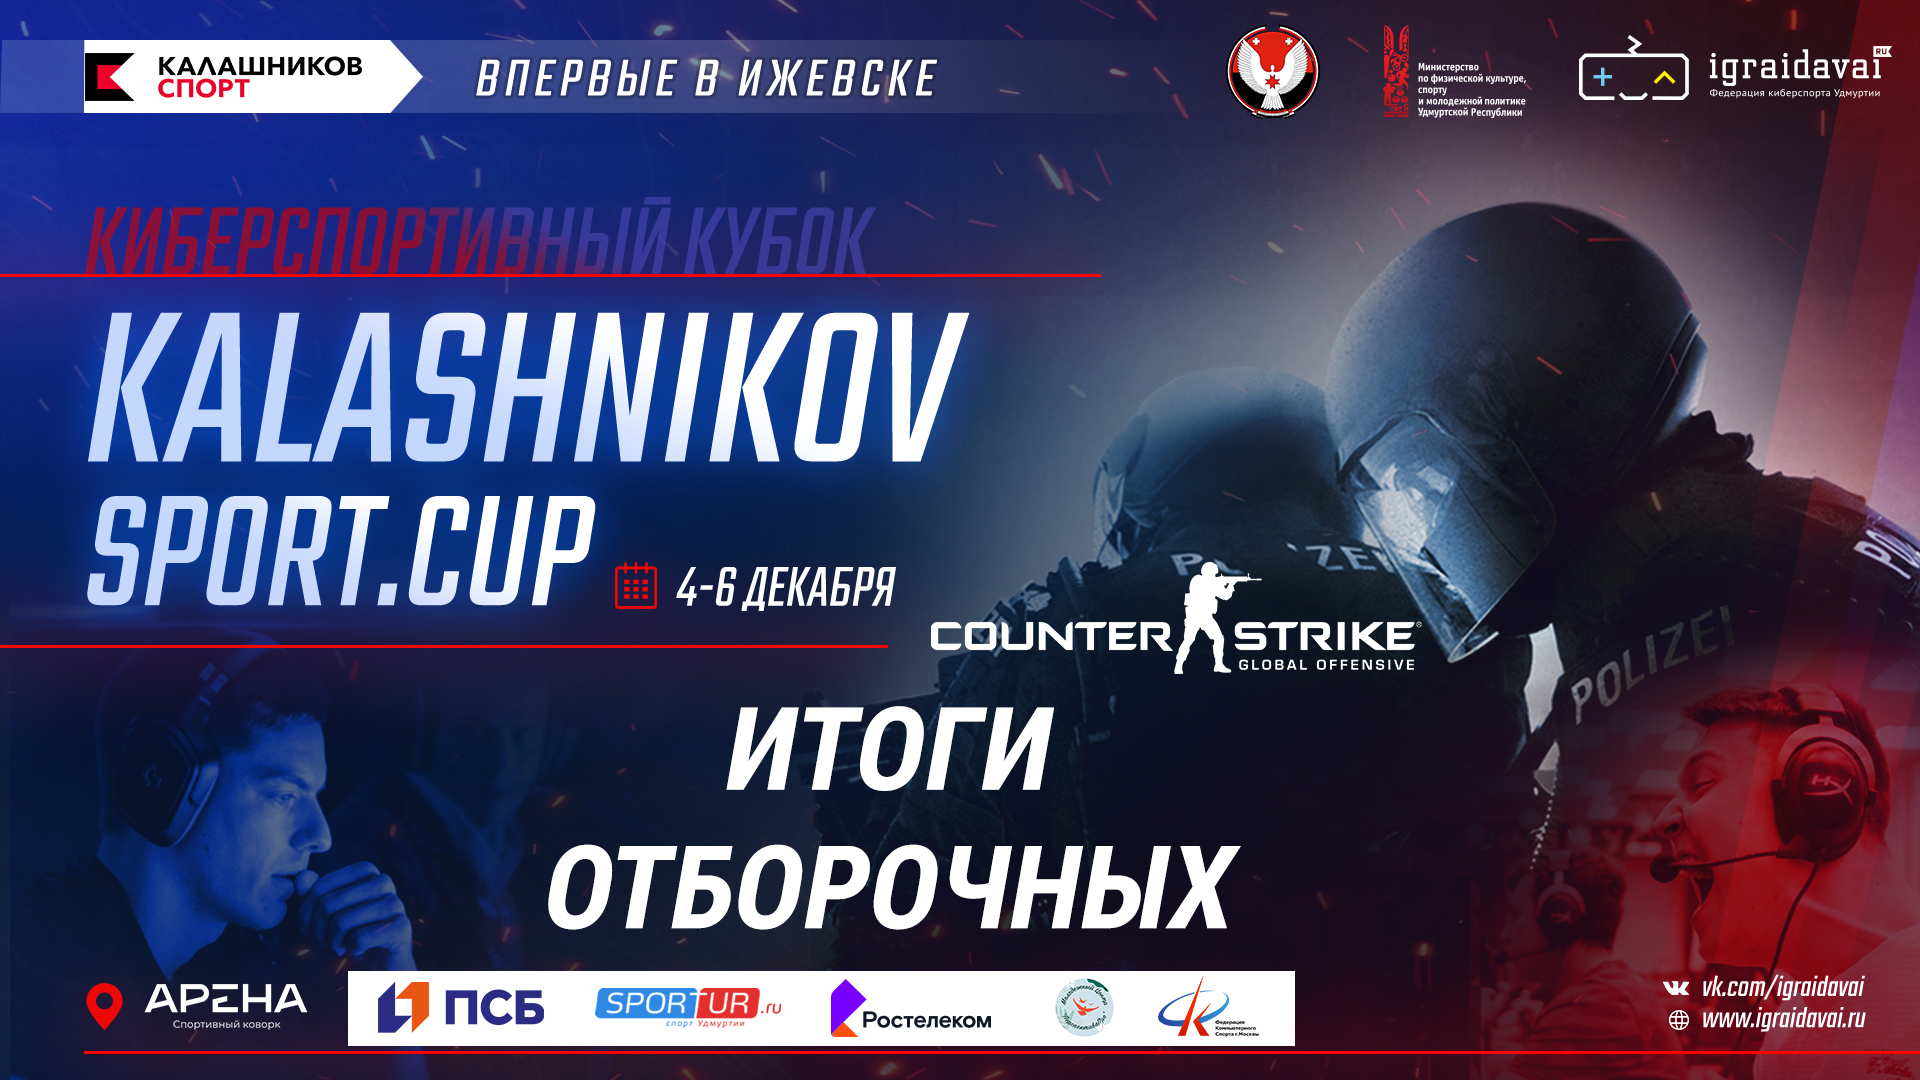 Kalashnikov_cup_news_ 2.jpg